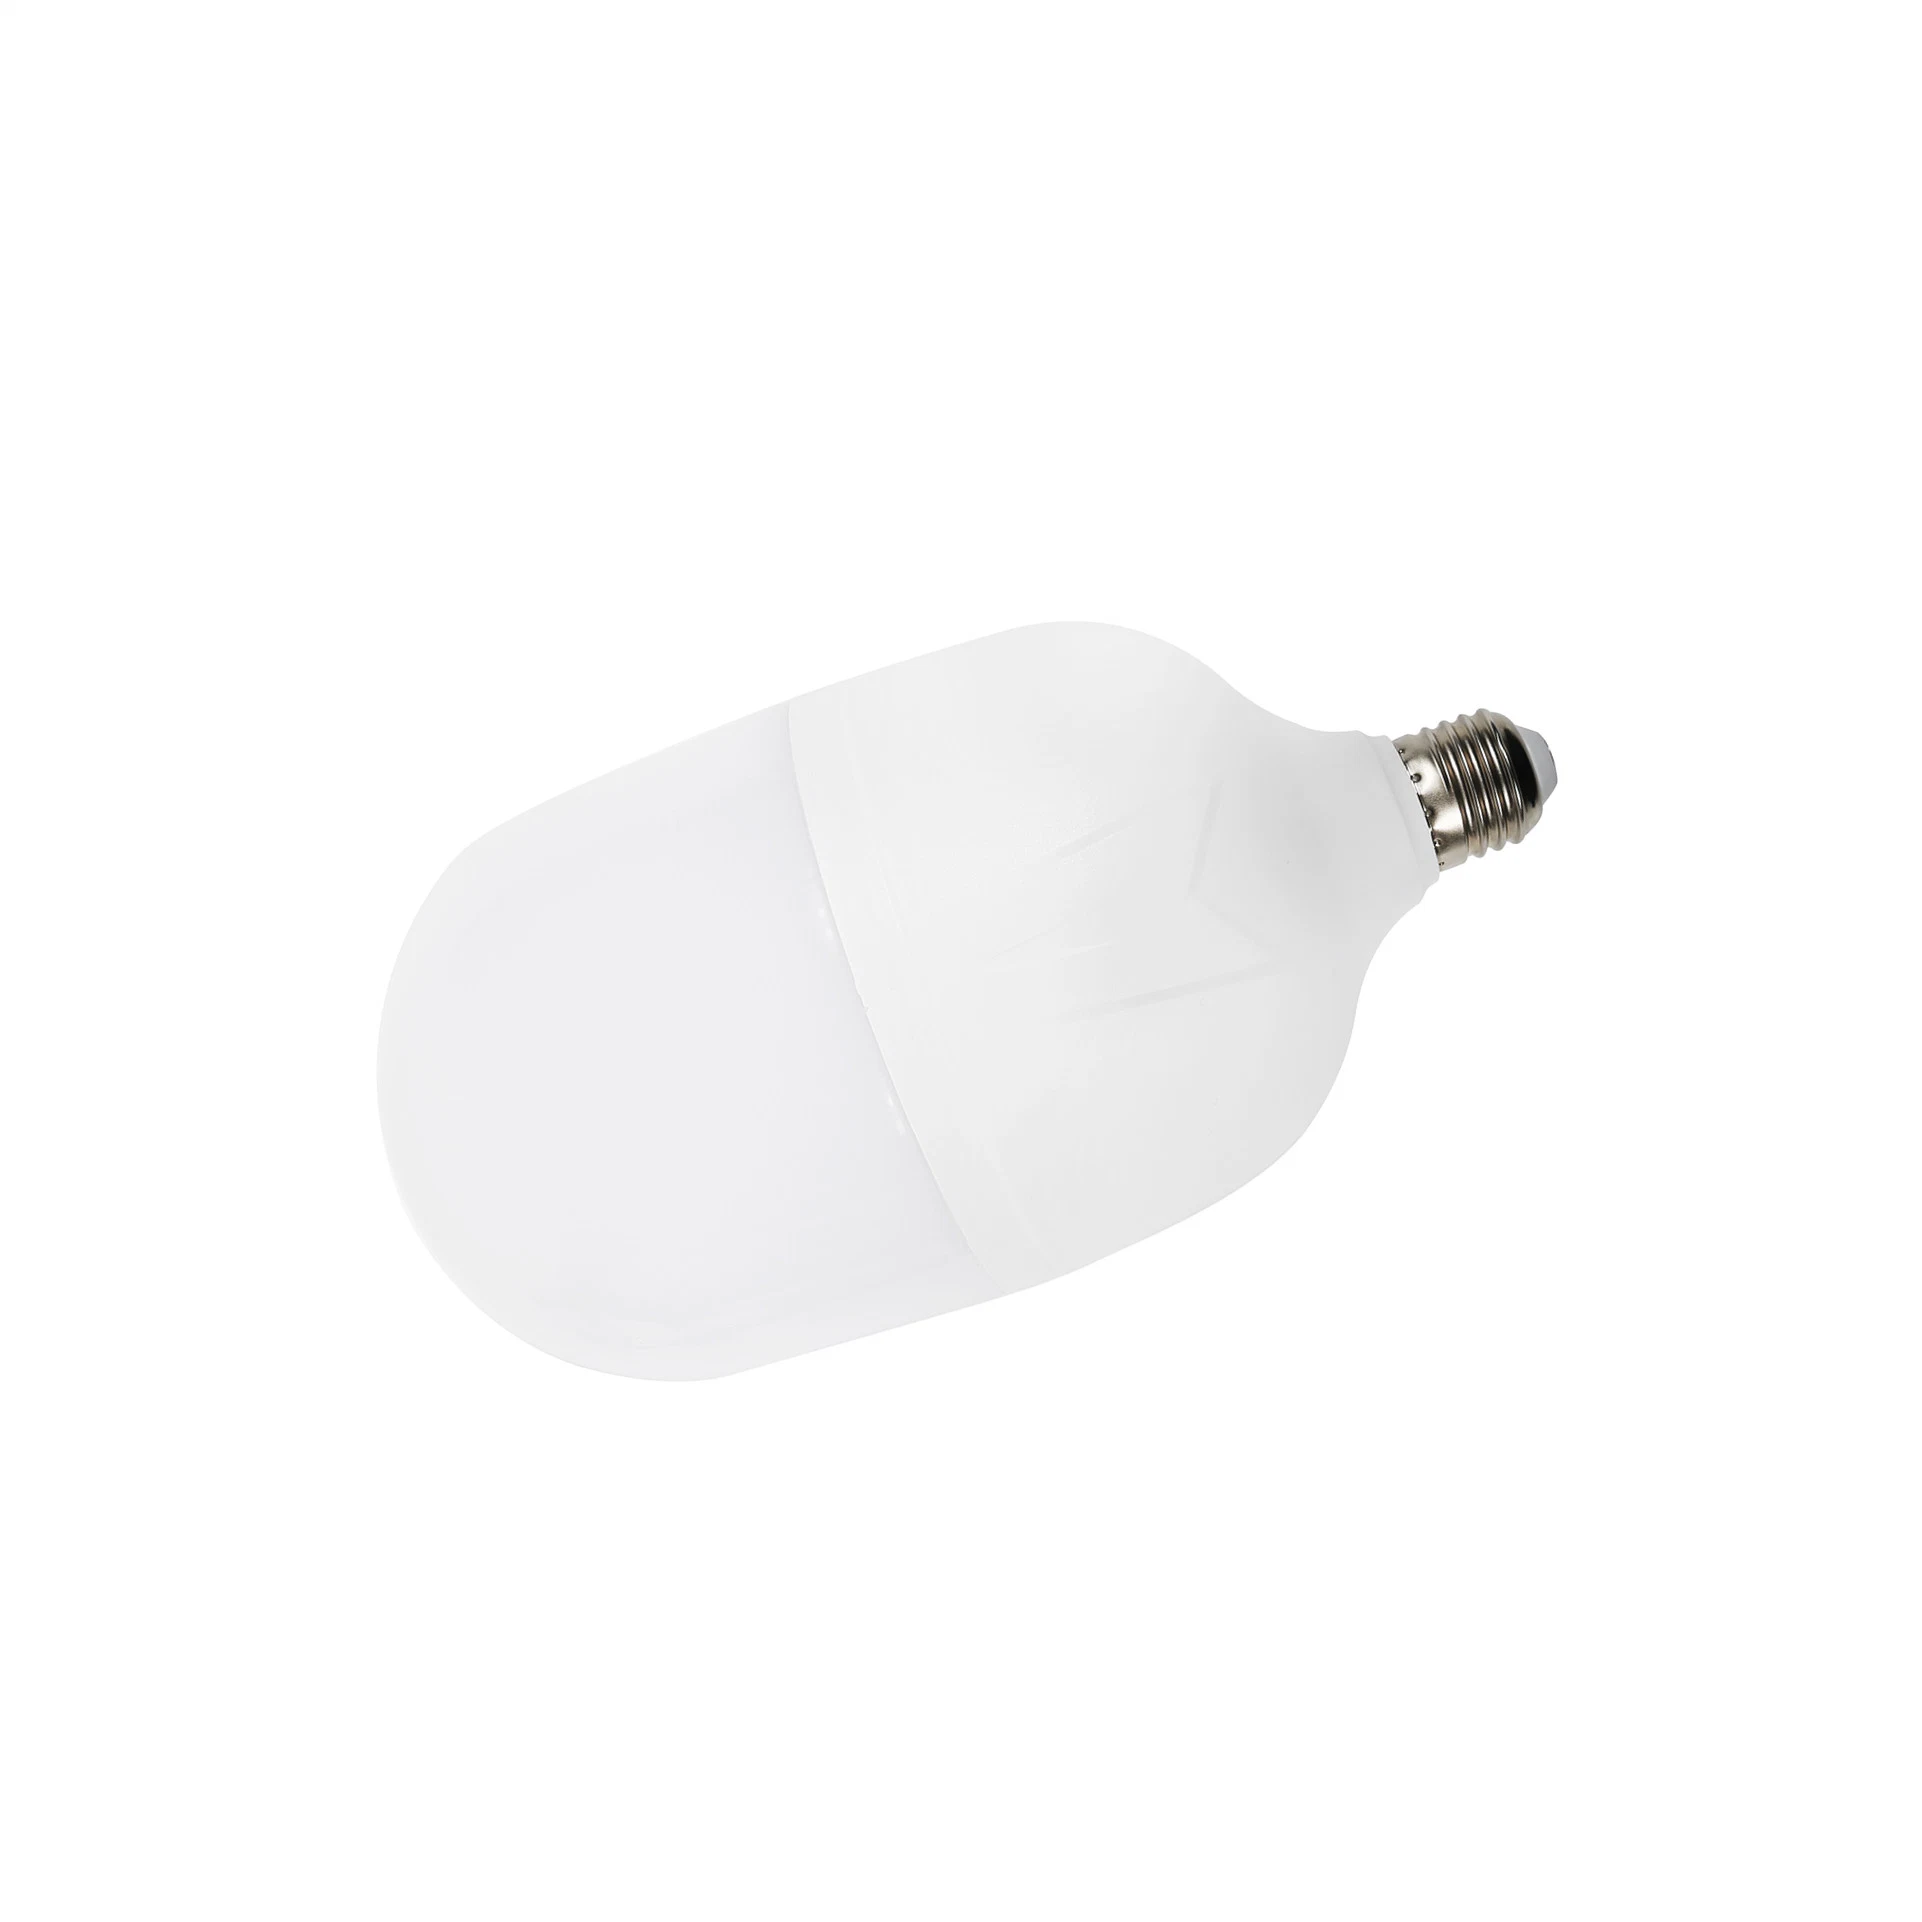 LED Luz LED de alta calidad T bombilla 20W 30W 40W Iluminación decorativa interior lámpara de bajo consumo corriente constante